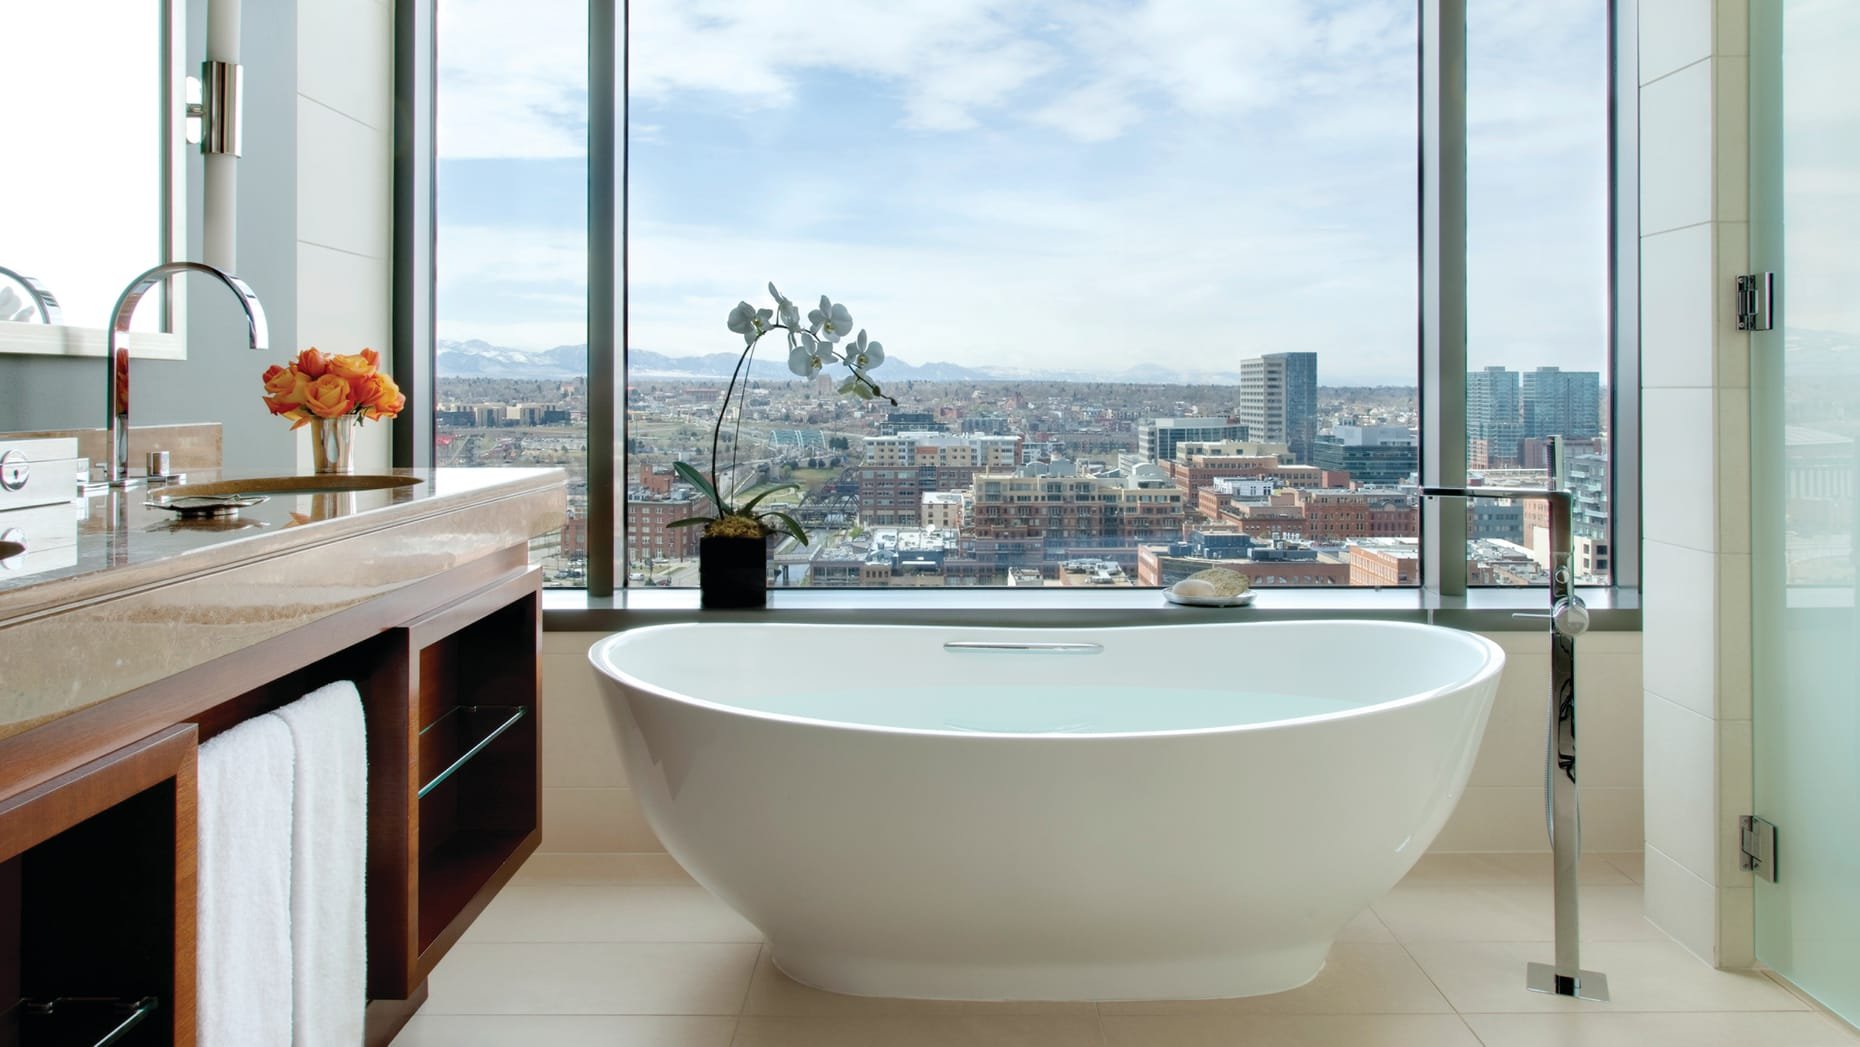 Ванна с большим окном. Гостиница в Москва Сити с панорамным видом и джакузи. Ванная с панорамным окном. Ванные комнаты с панорамными окнами. Ванная комната с панорамным окном.